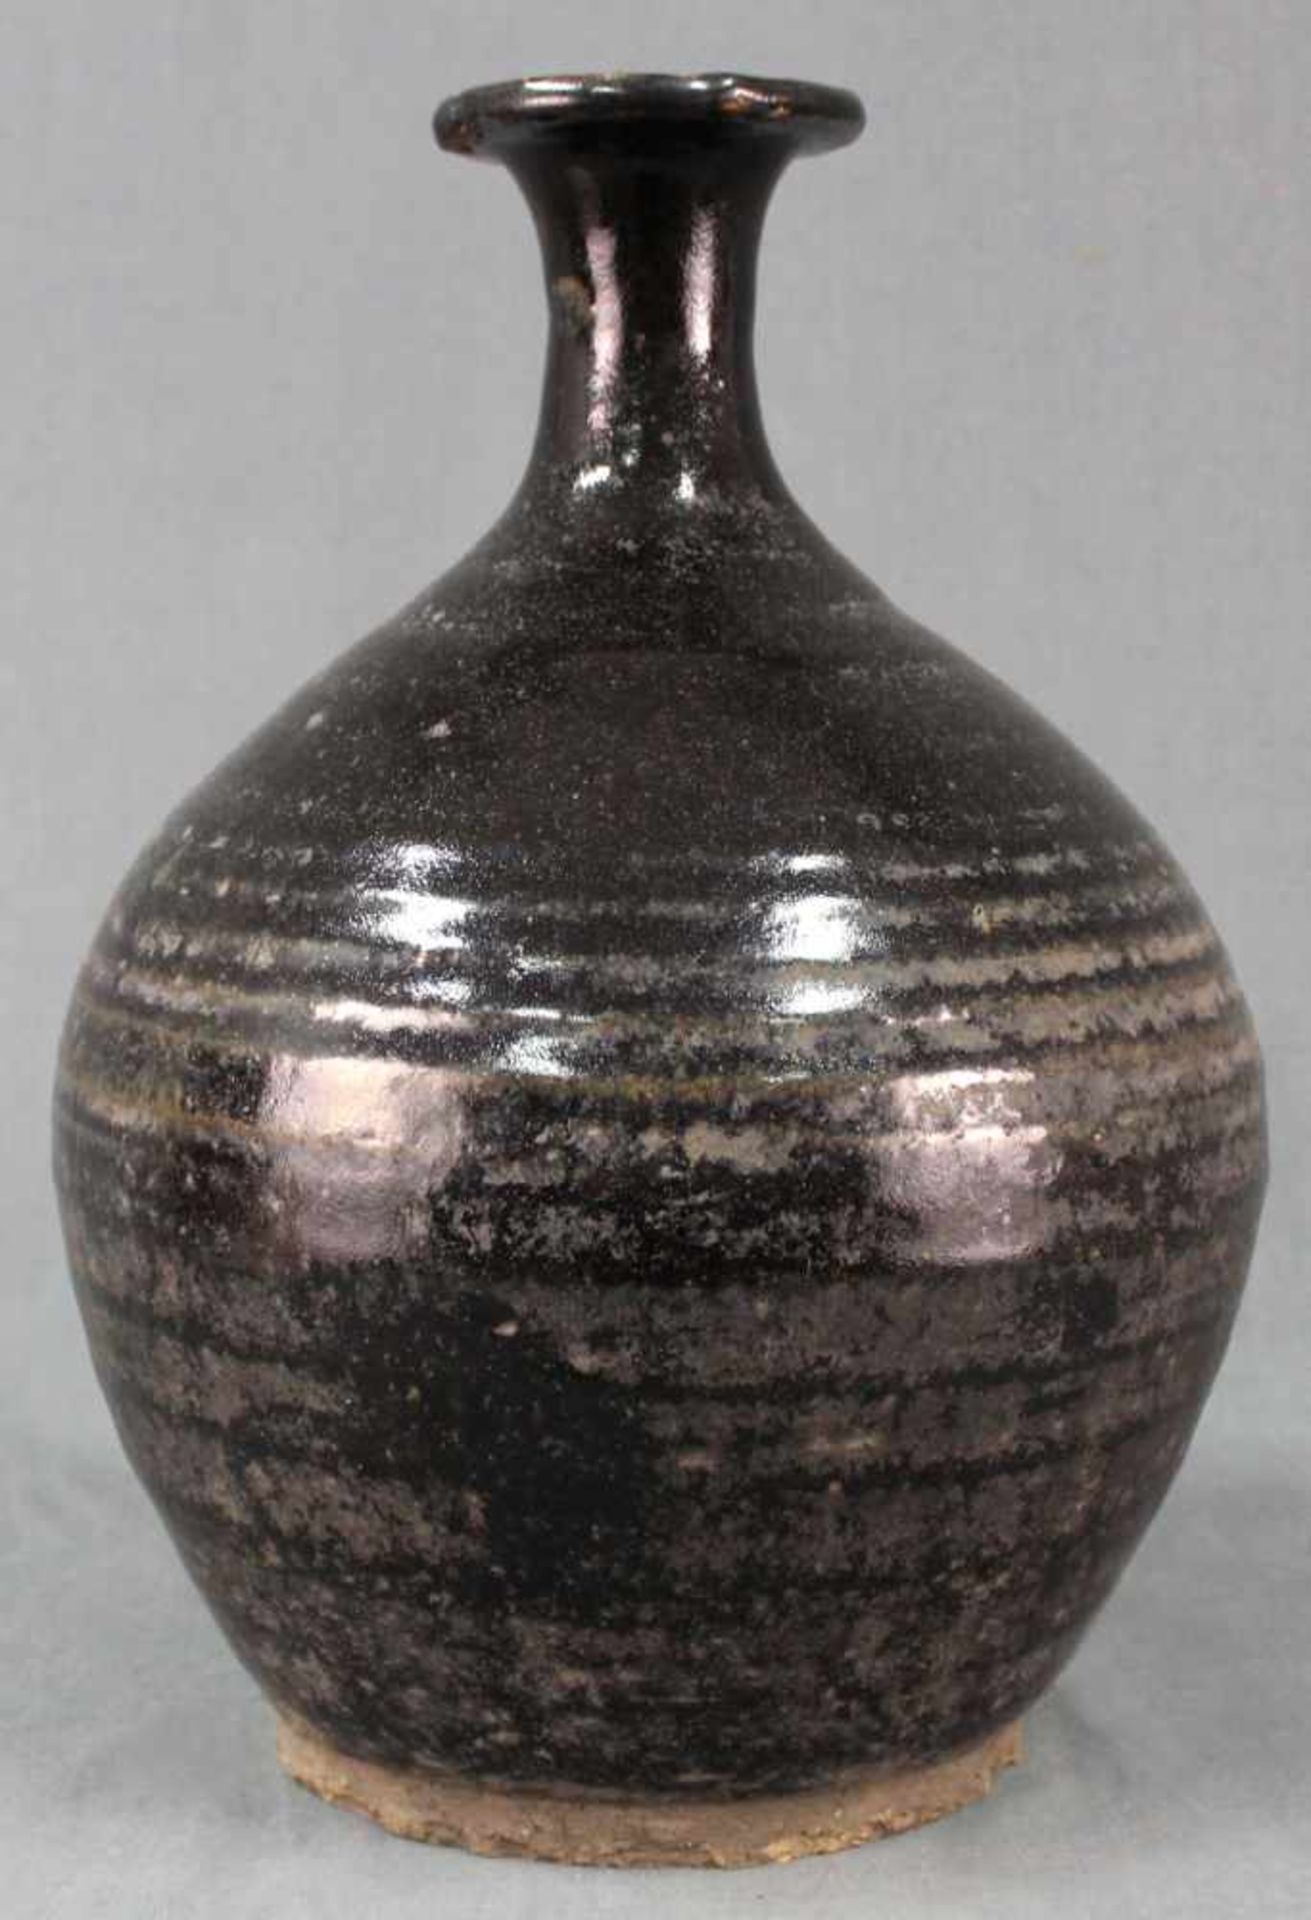 Bauchige Vase. Vorratsgefäß. Steingut. Schwarze Glasur. Wohl Zentralasien, antik.34 cm hoch.Vase.